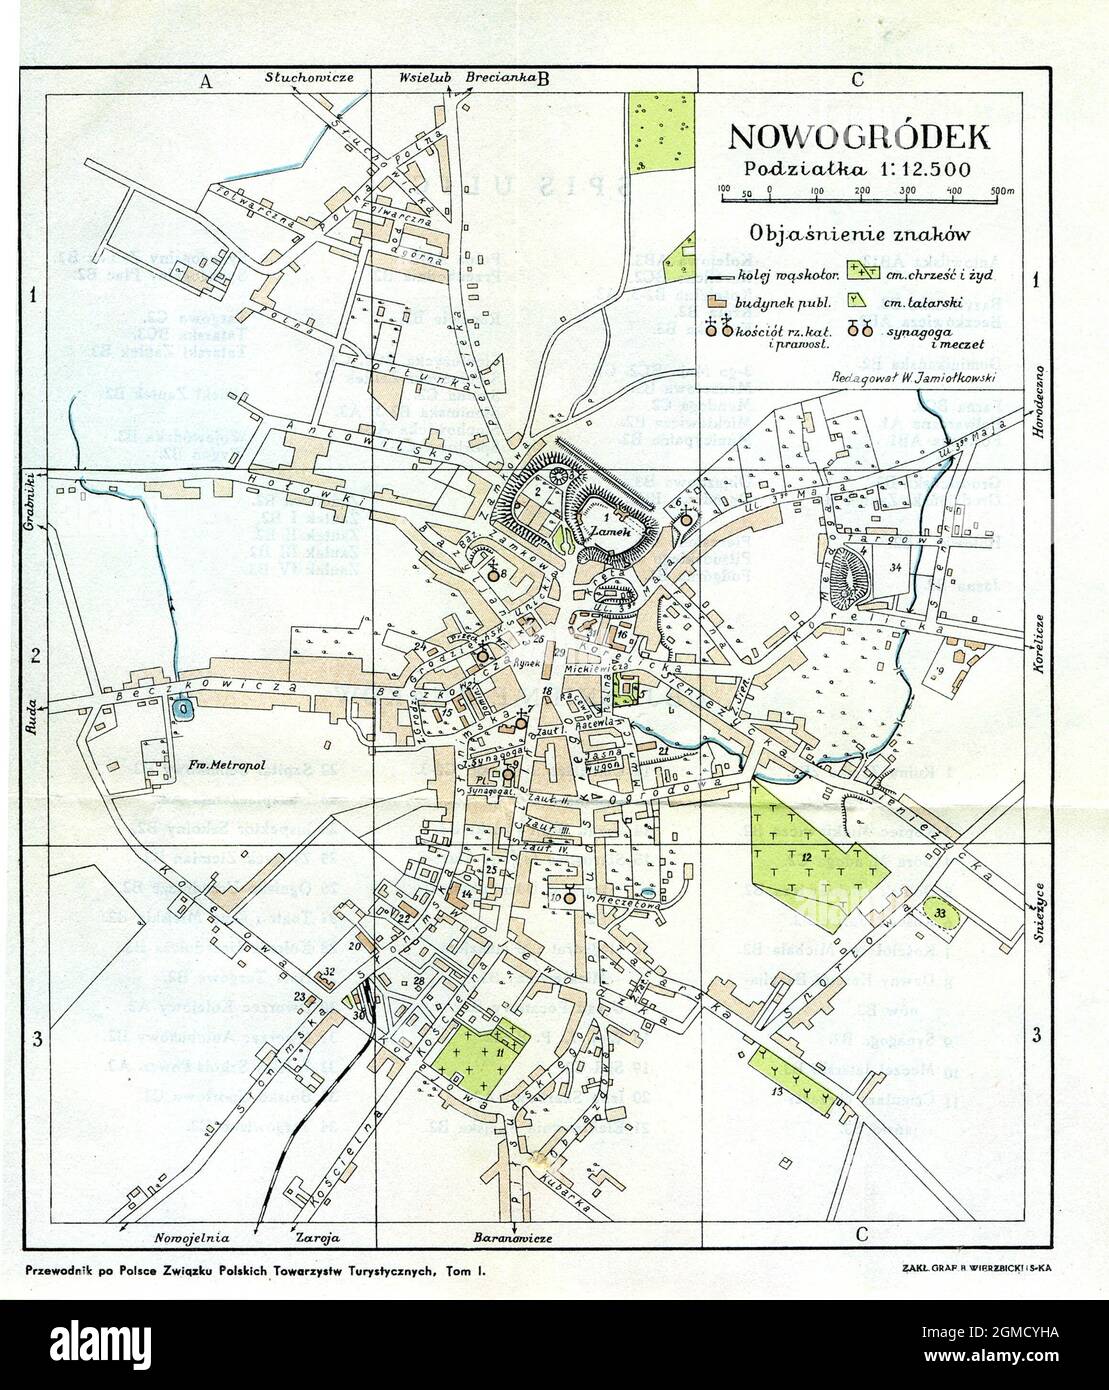 Old Nowogrodek Map, Nowogrodek Map, Retro Nowogrodek Map, Vintage Nowogrodek Map, Old Map of Nowogrodek, Map of Nowogrodek, Retro Map of Nowogrodek Stock Photo